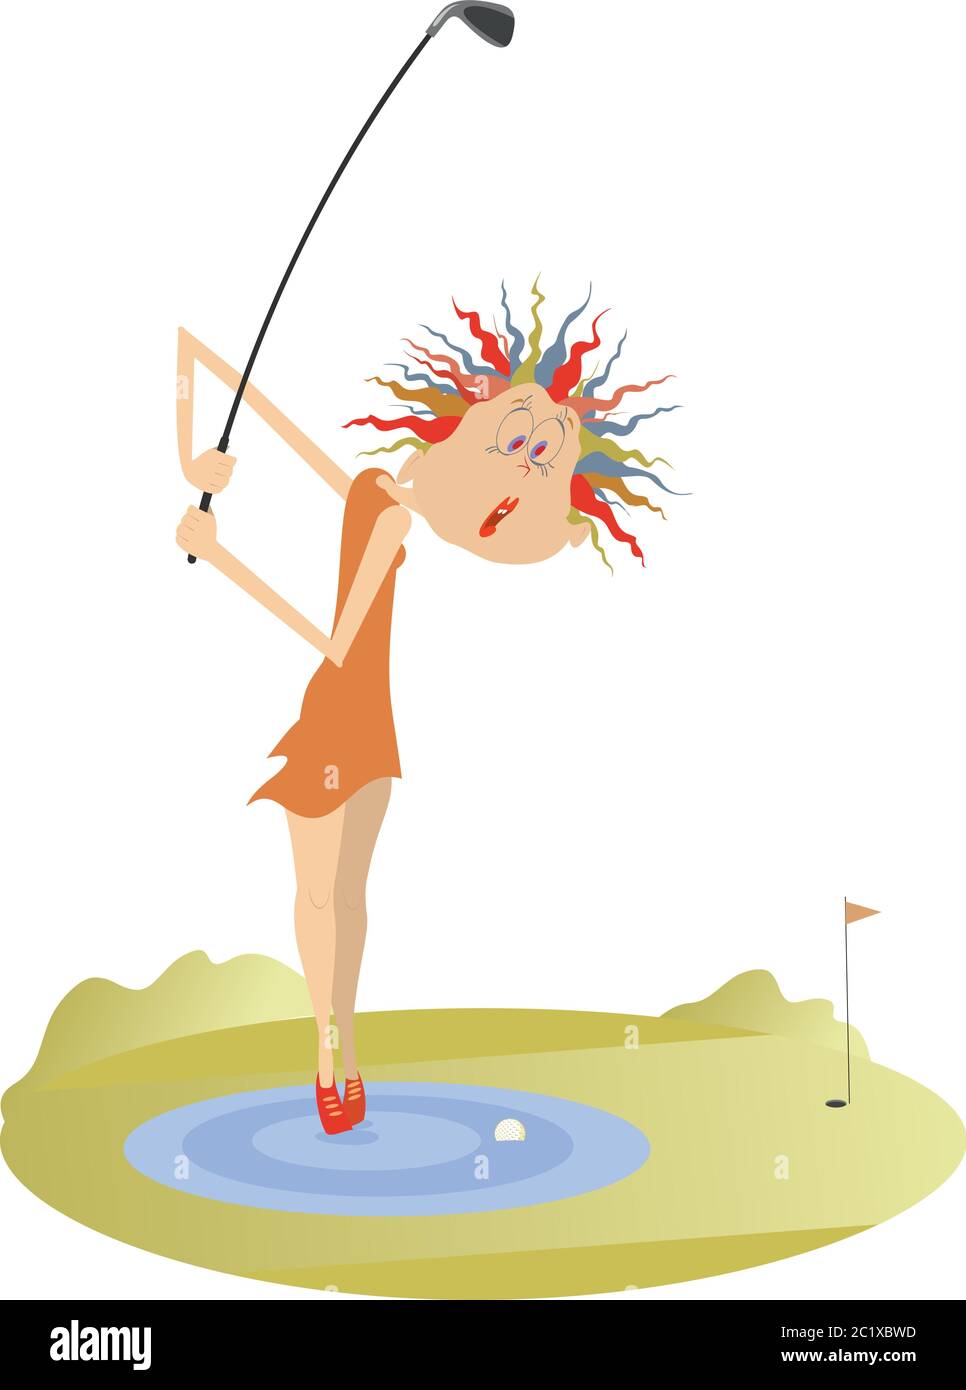 Femme et problème de coup sur l'illustration du terrain de golf. Drôle de golfeur femme se tient sur l'eau est de penser comment faire un coup de pied de l'obstacle d'eau Illustration de Vecteur